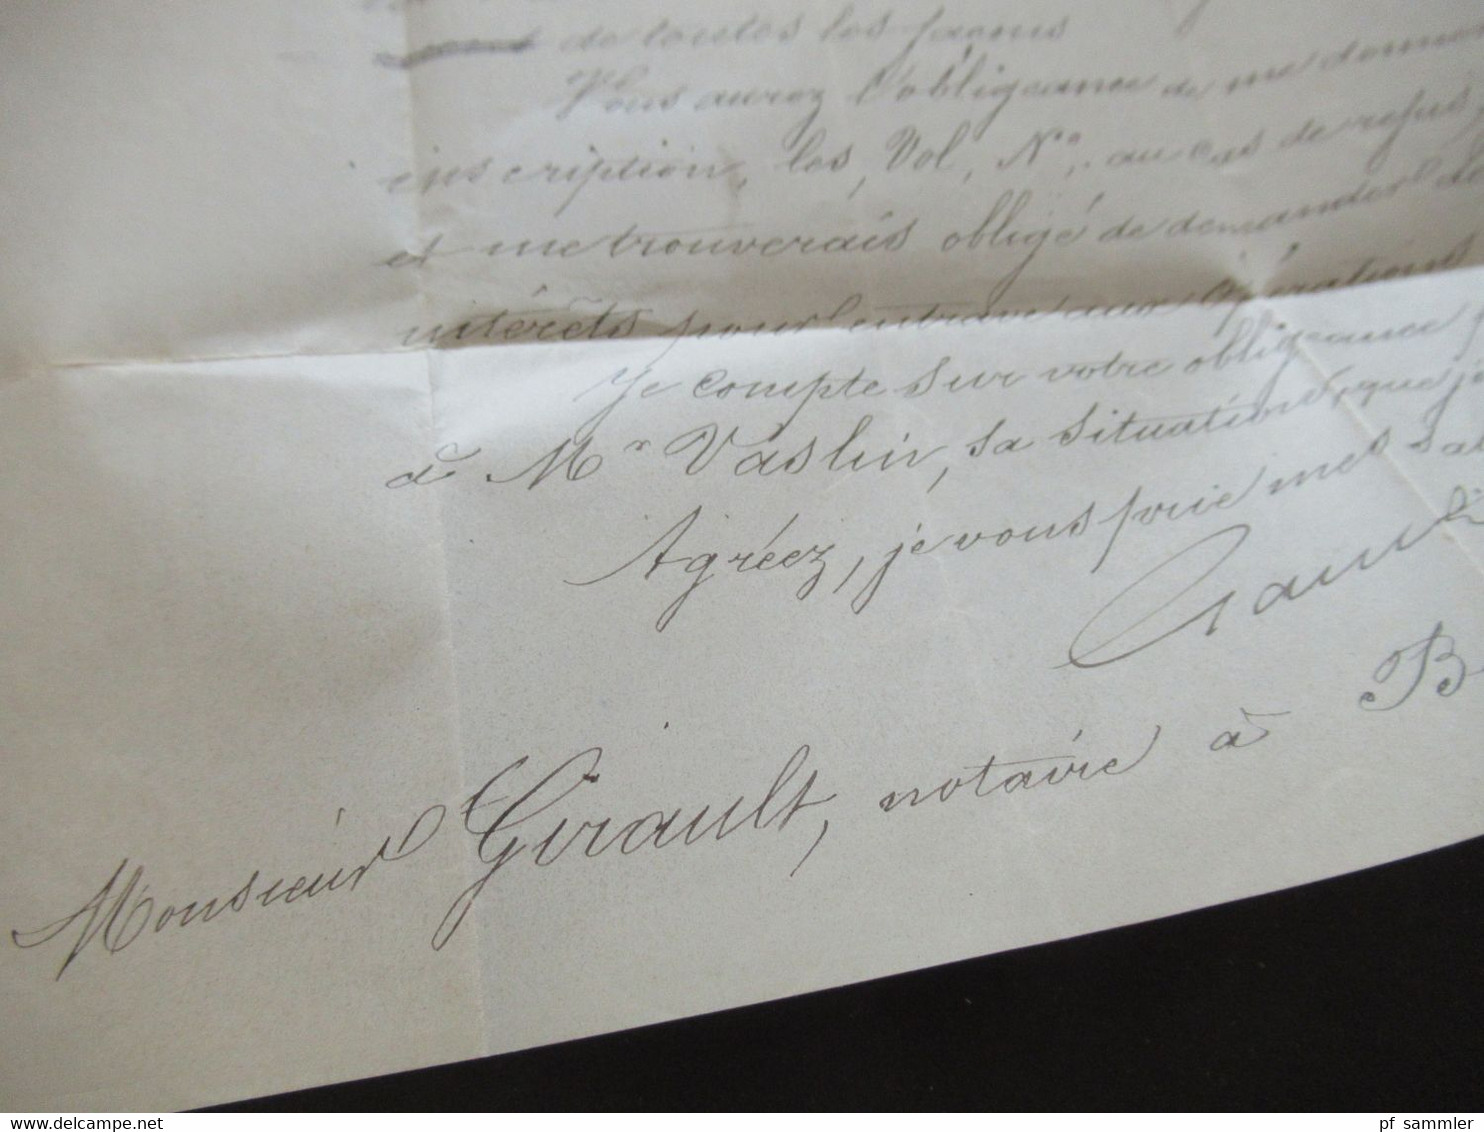 Frankreich 1876 Ceres Nr.51 EF Paris - Bourgueil an den Notaire Monsieur Girault Brief mit Inhalt Gauche Avenue Victoria